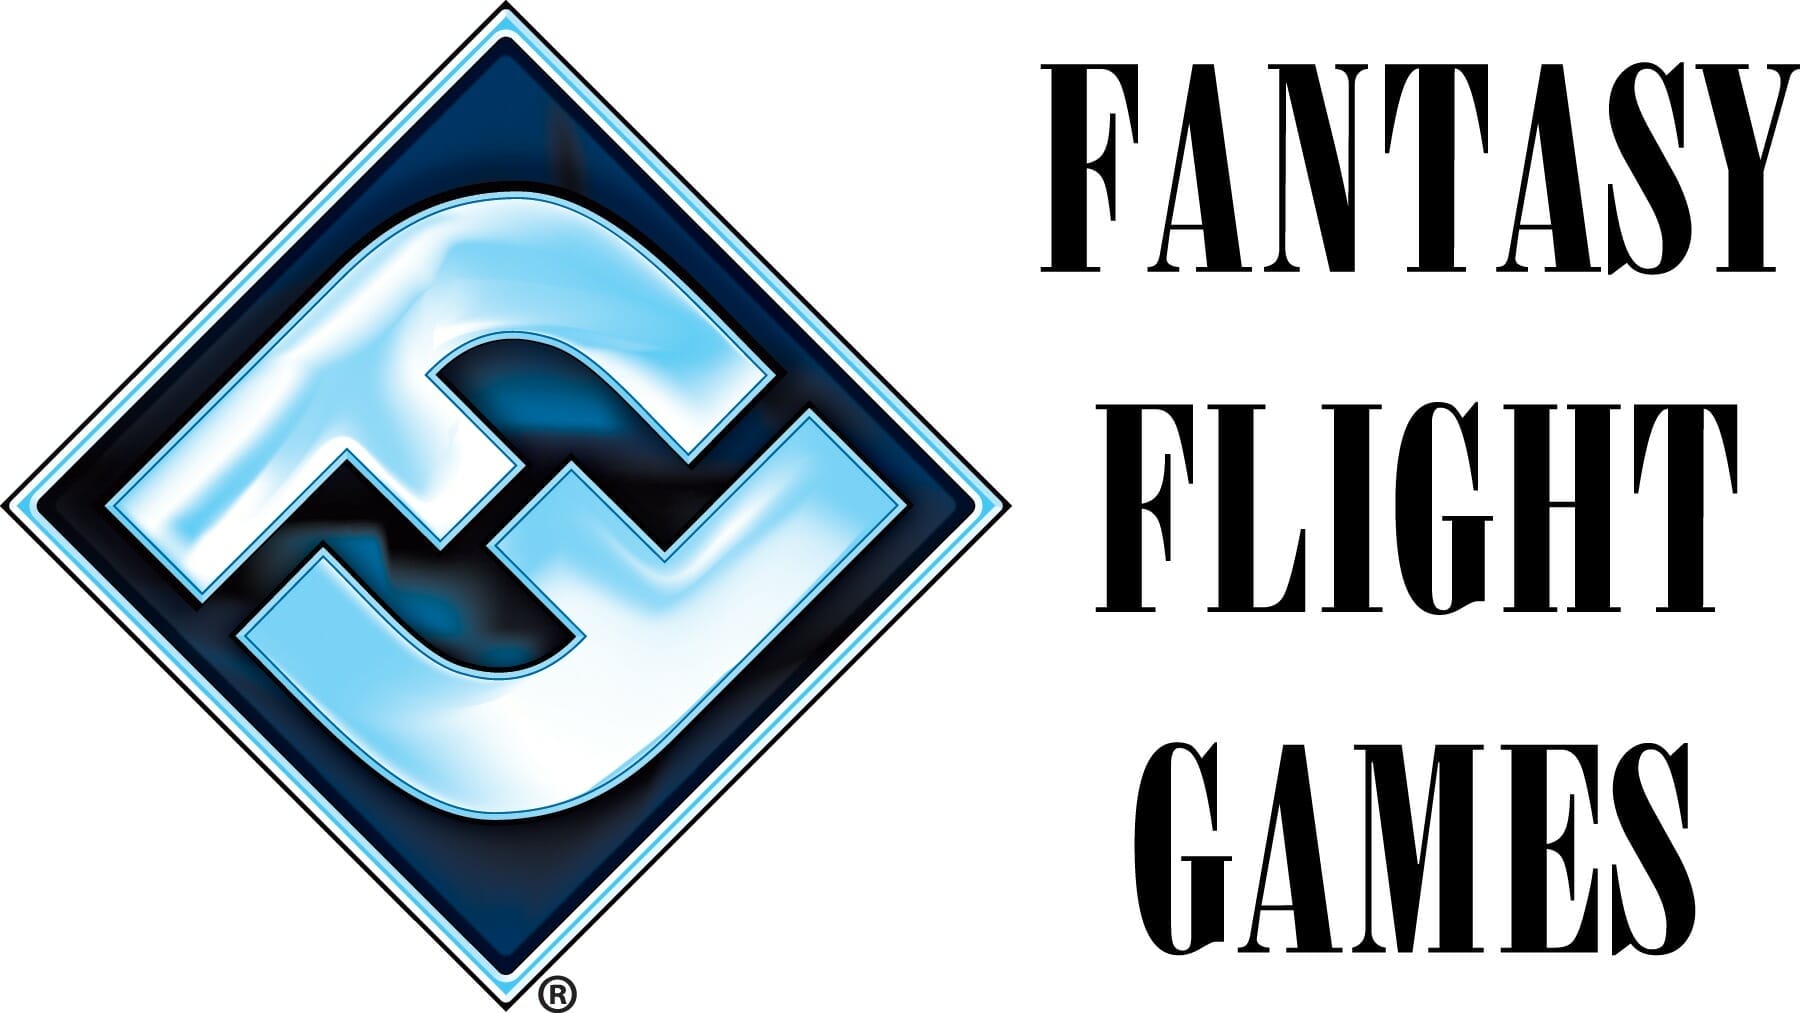 Fantasy Flight Games